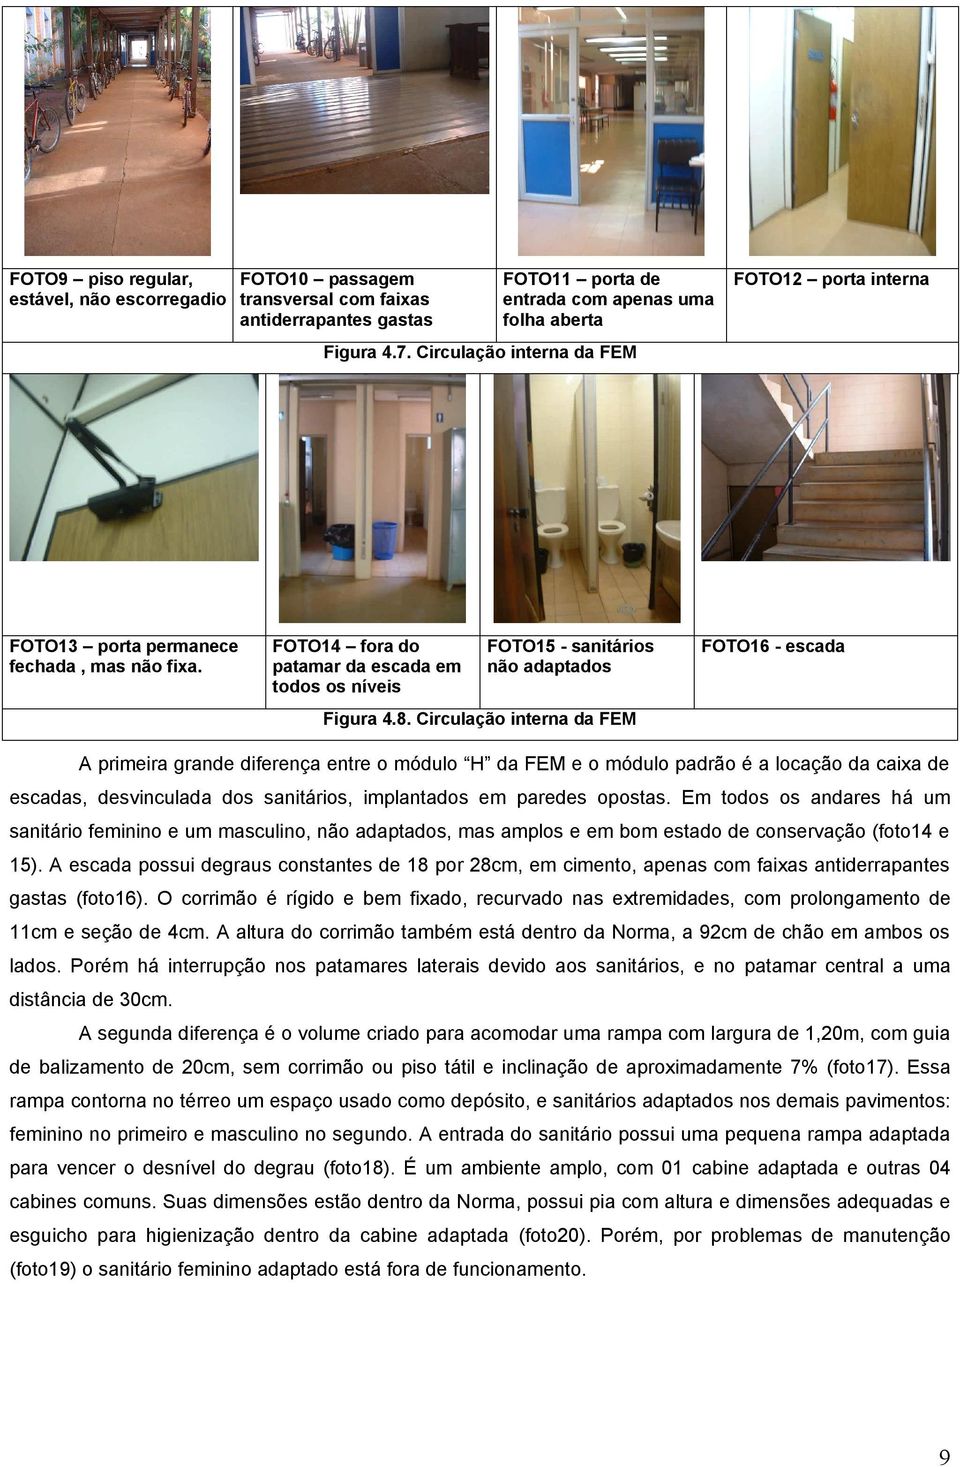 Circulação interna da FEM FOTO16 - escada A primeira grande diferença entre o módulo H da FEM e o módulo padrão é a locação da caixa de escadas, desvinculada dos sanitários, implantados em paredes